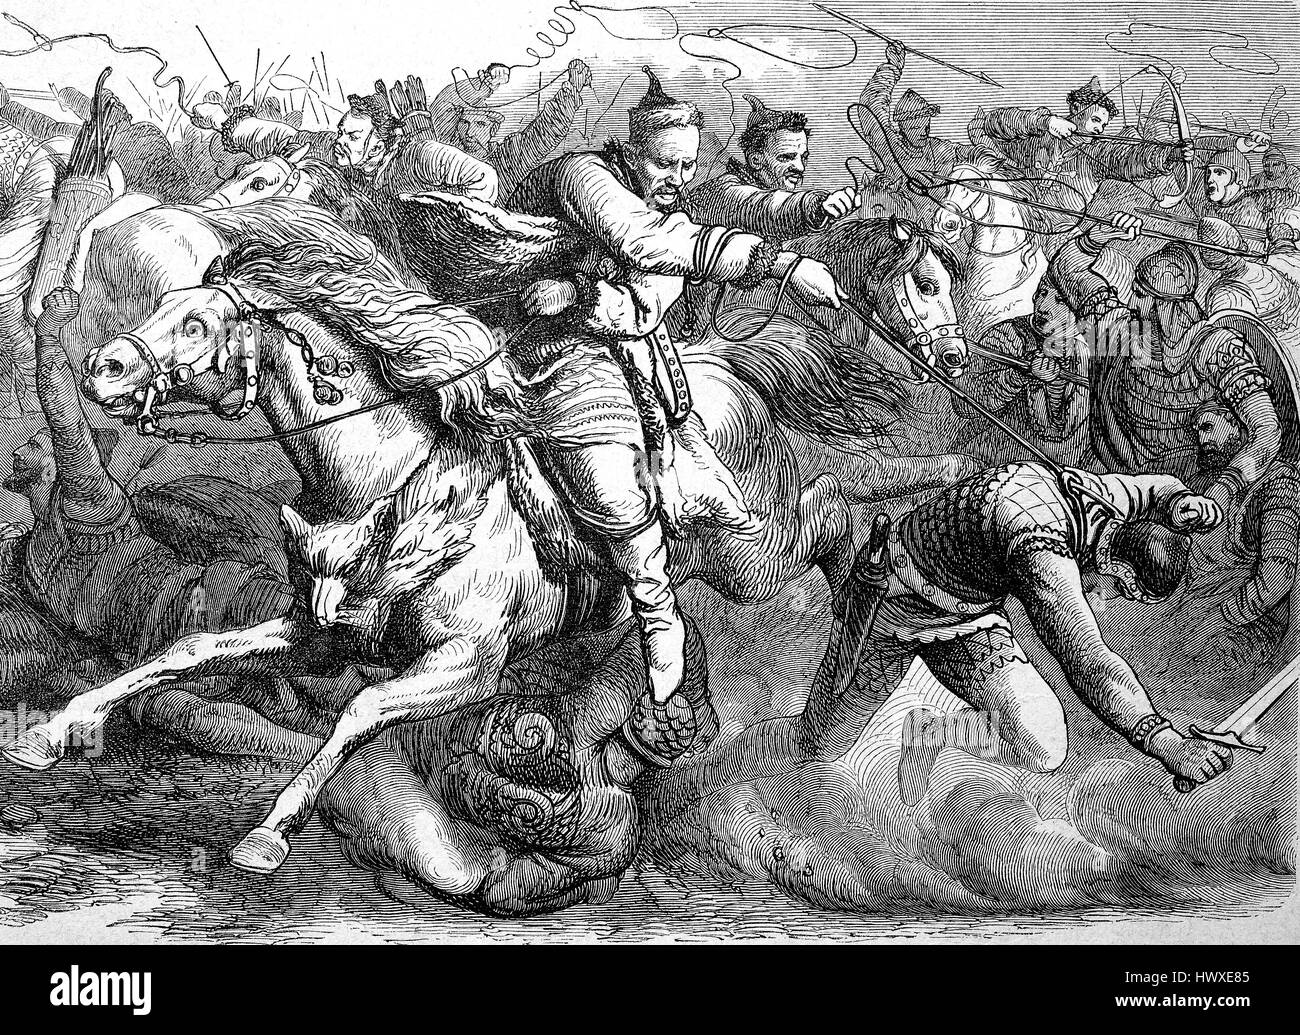 Die Hunnen im Kampf mit den Alanen oder Alani, eine iranische pastorale Nomadenvolk der Antike, Hunnic Invasion im 370, Reproduktion eines Bildes, Holzschnitt aus dem Jahr 1881, Digital verbessert Stockfoto